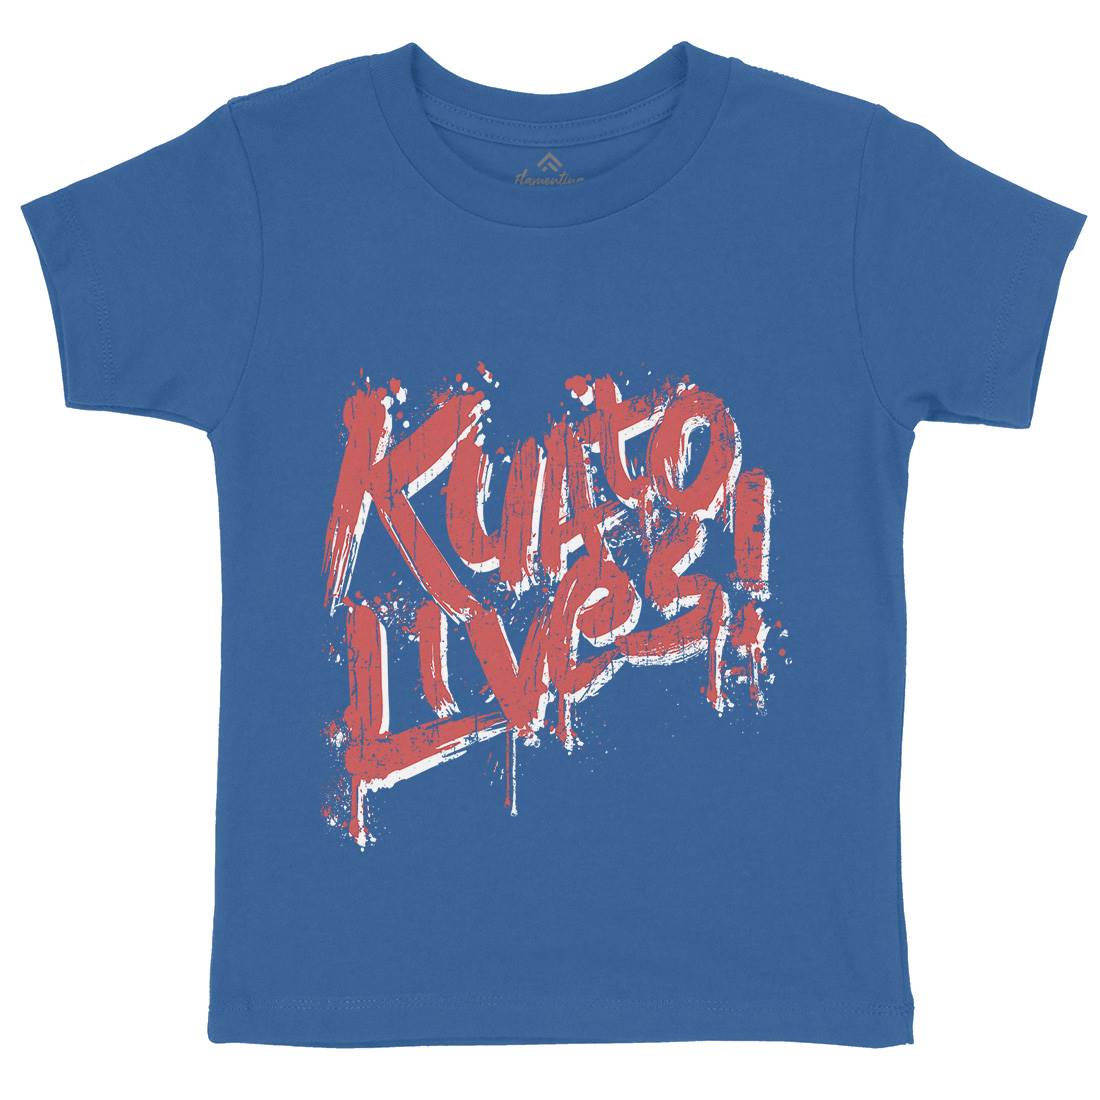 Kuato Lives Kids Crew Neck T-Shirt Space D249